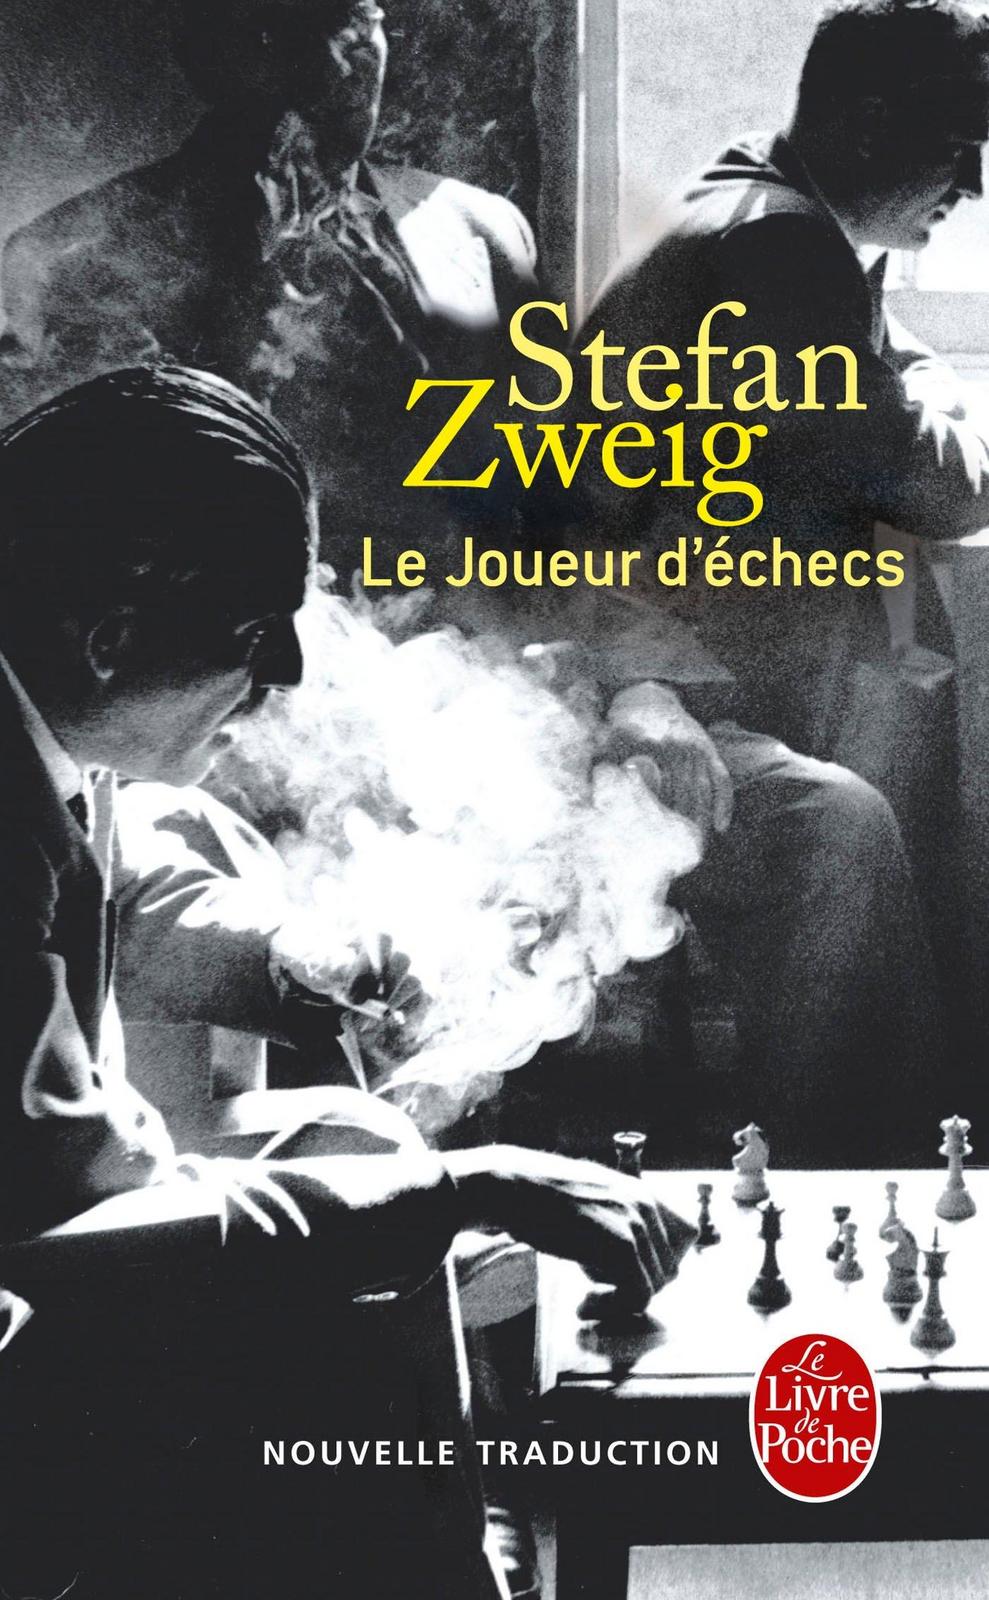 Le joueur d'échecs (French language, 2013)